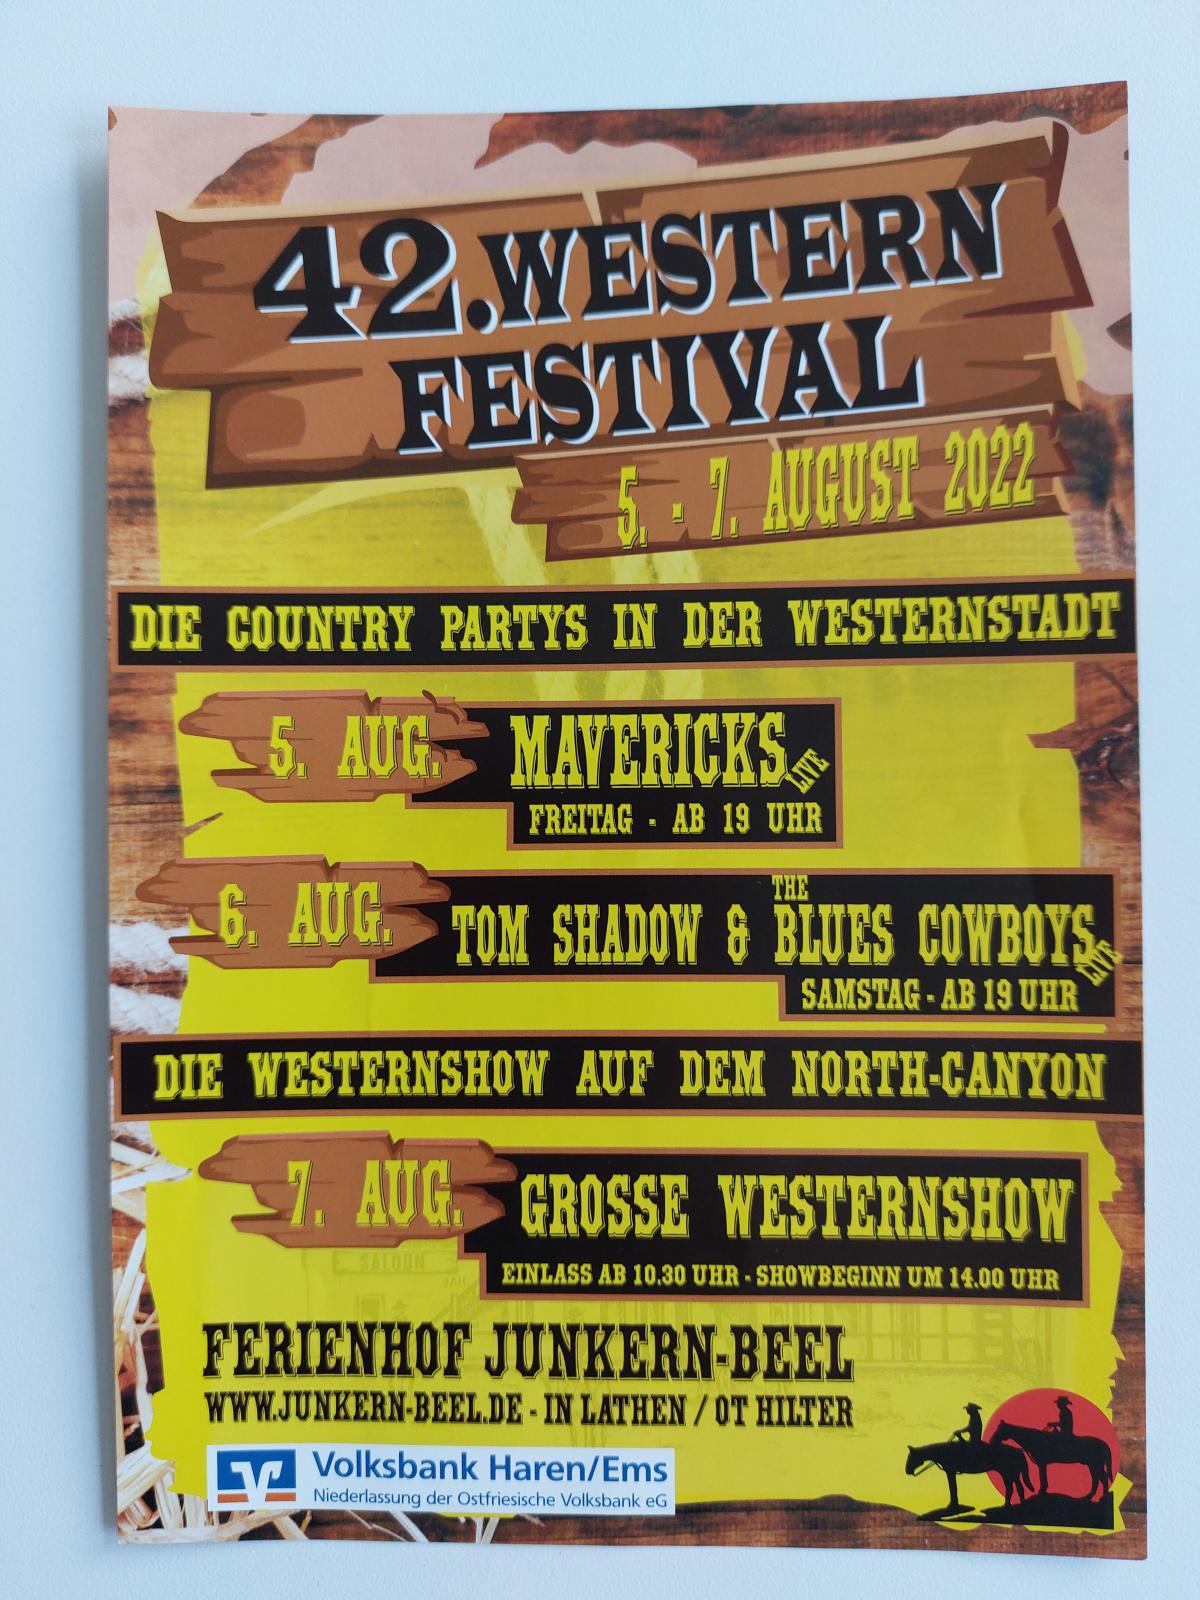 42. Western Festival vom 05.08. bis 07.08.22 in Lathen / OT Hilter